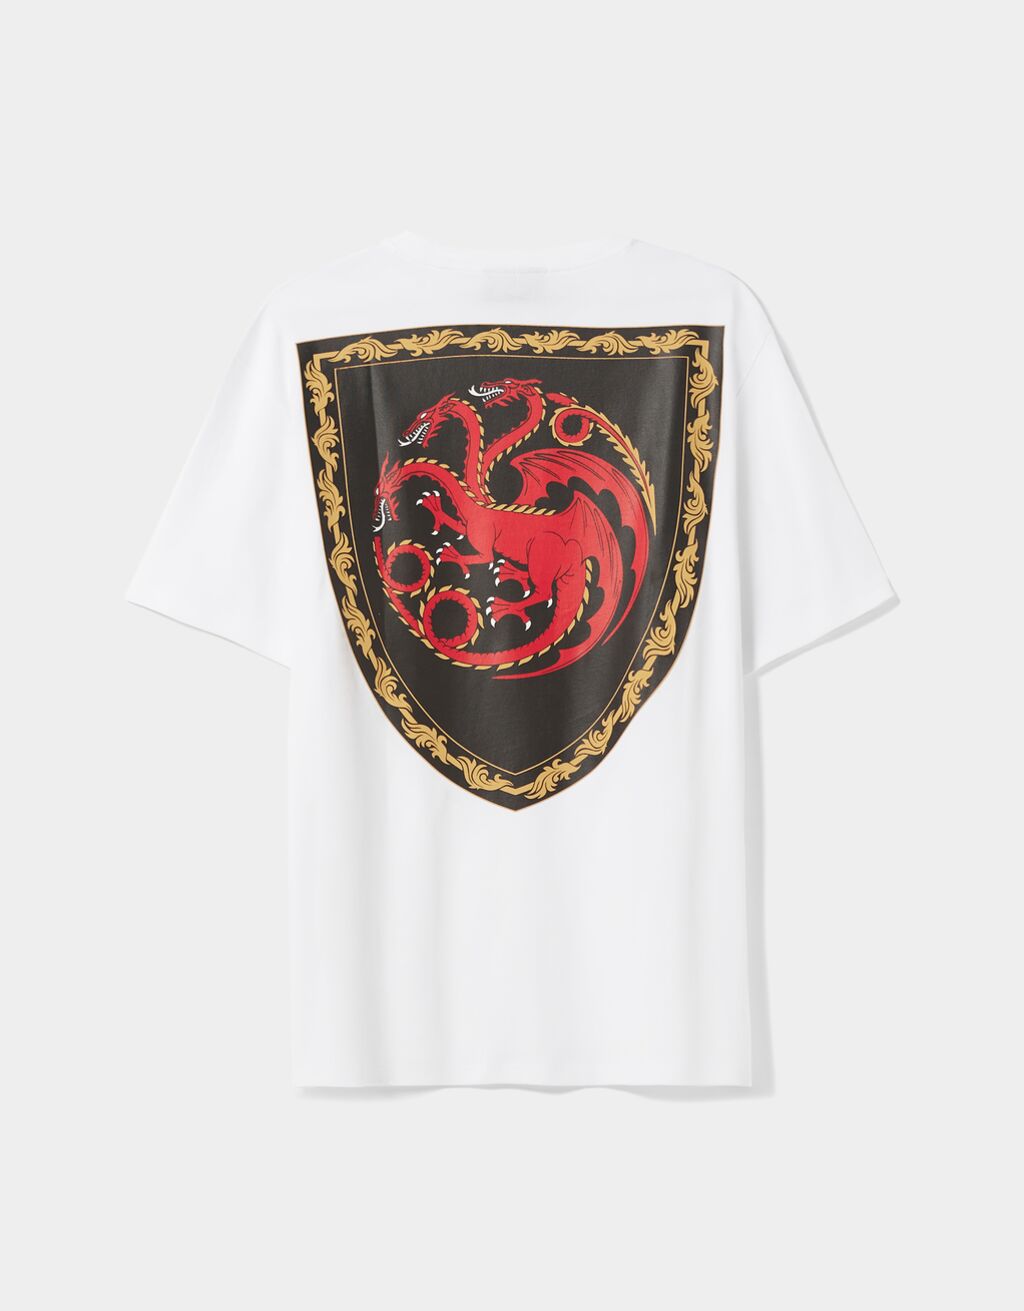 Tričko House of Dragons regular fit s krátkými rukávy